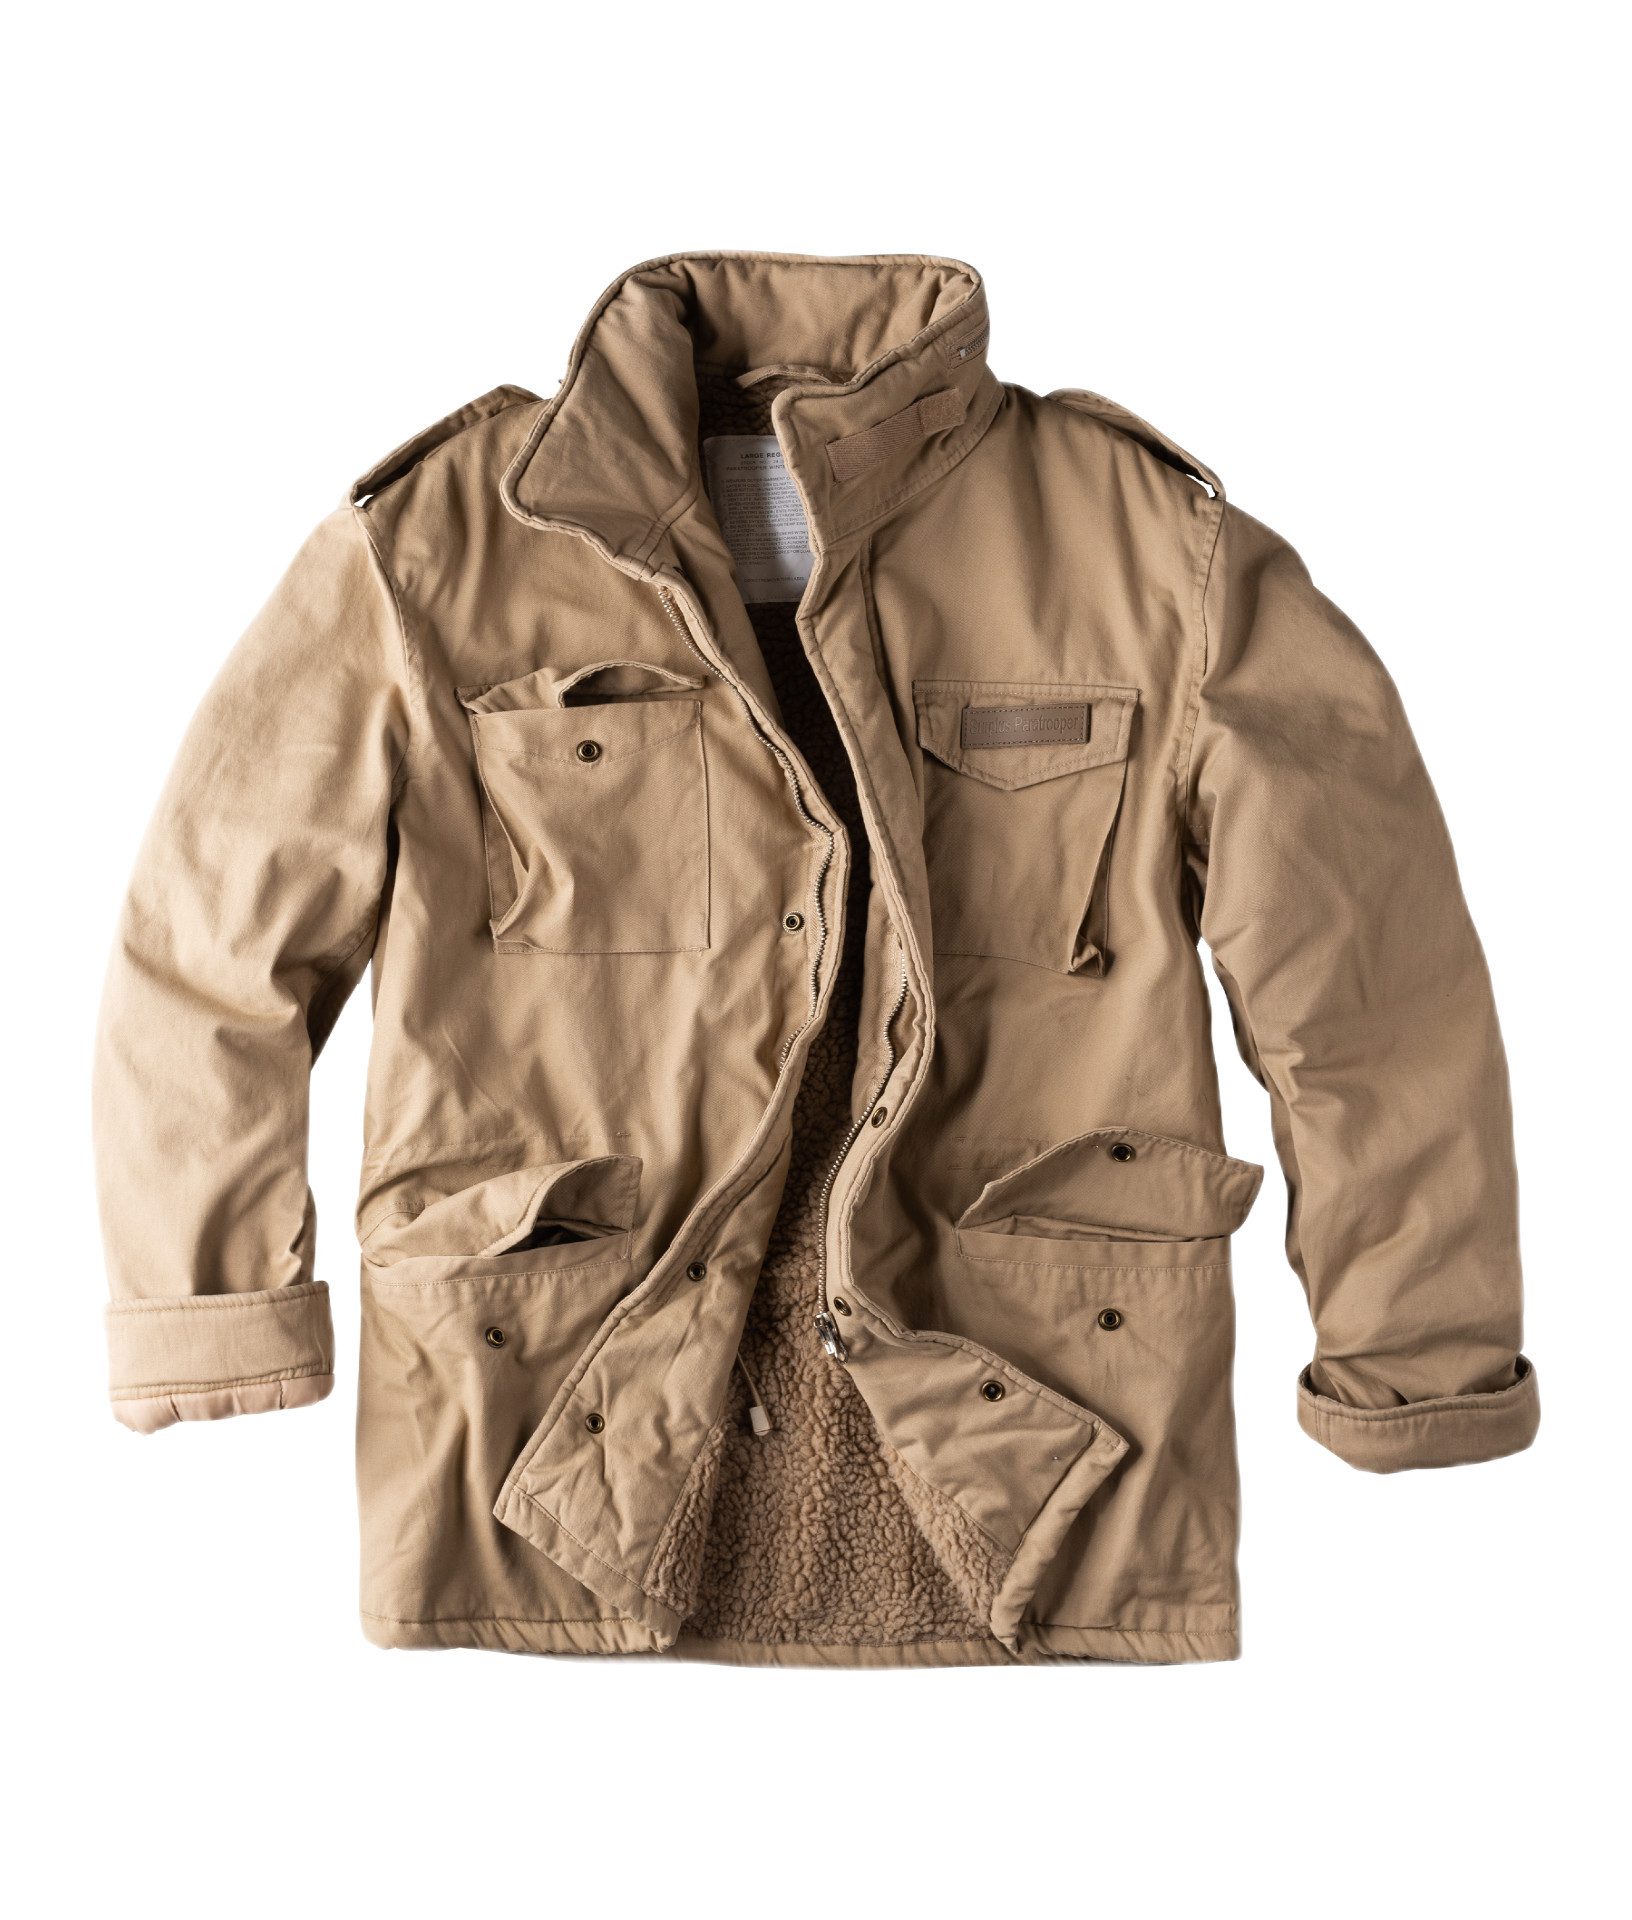 Surplus Raw Vintage Fieldjacket PARATROOPER Winter Jacket Winterjacke, beige